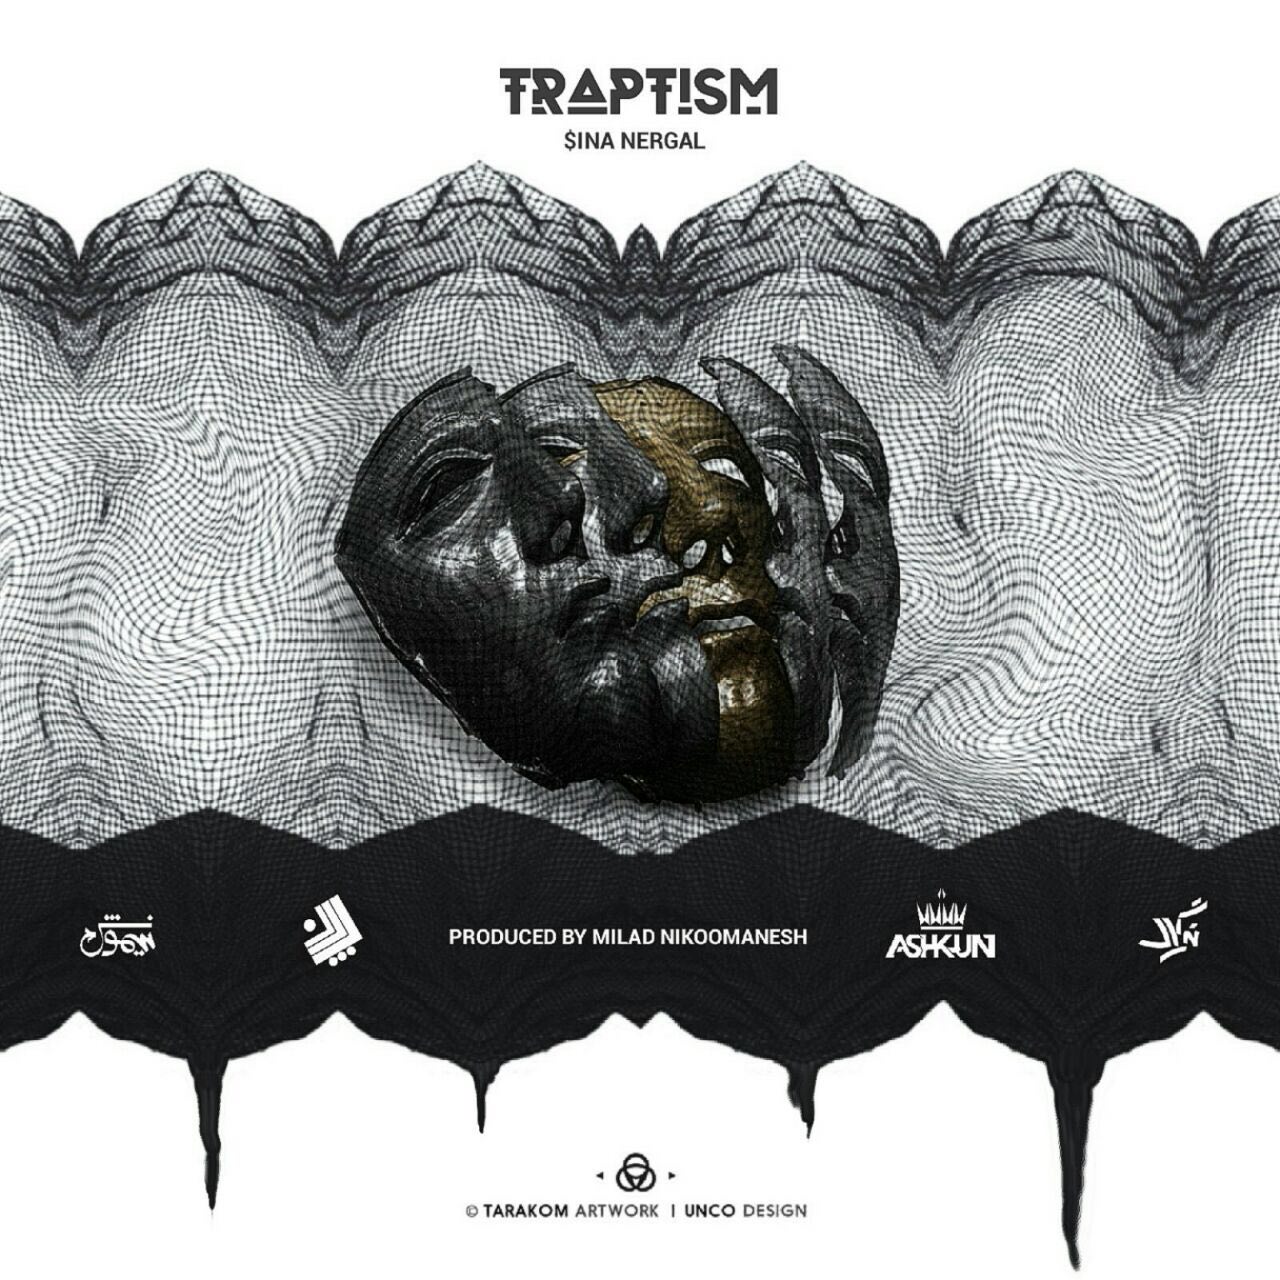 دانلود آلبوم جدید و بسیار زیبای سینا نرگال به نام ترپتیسم